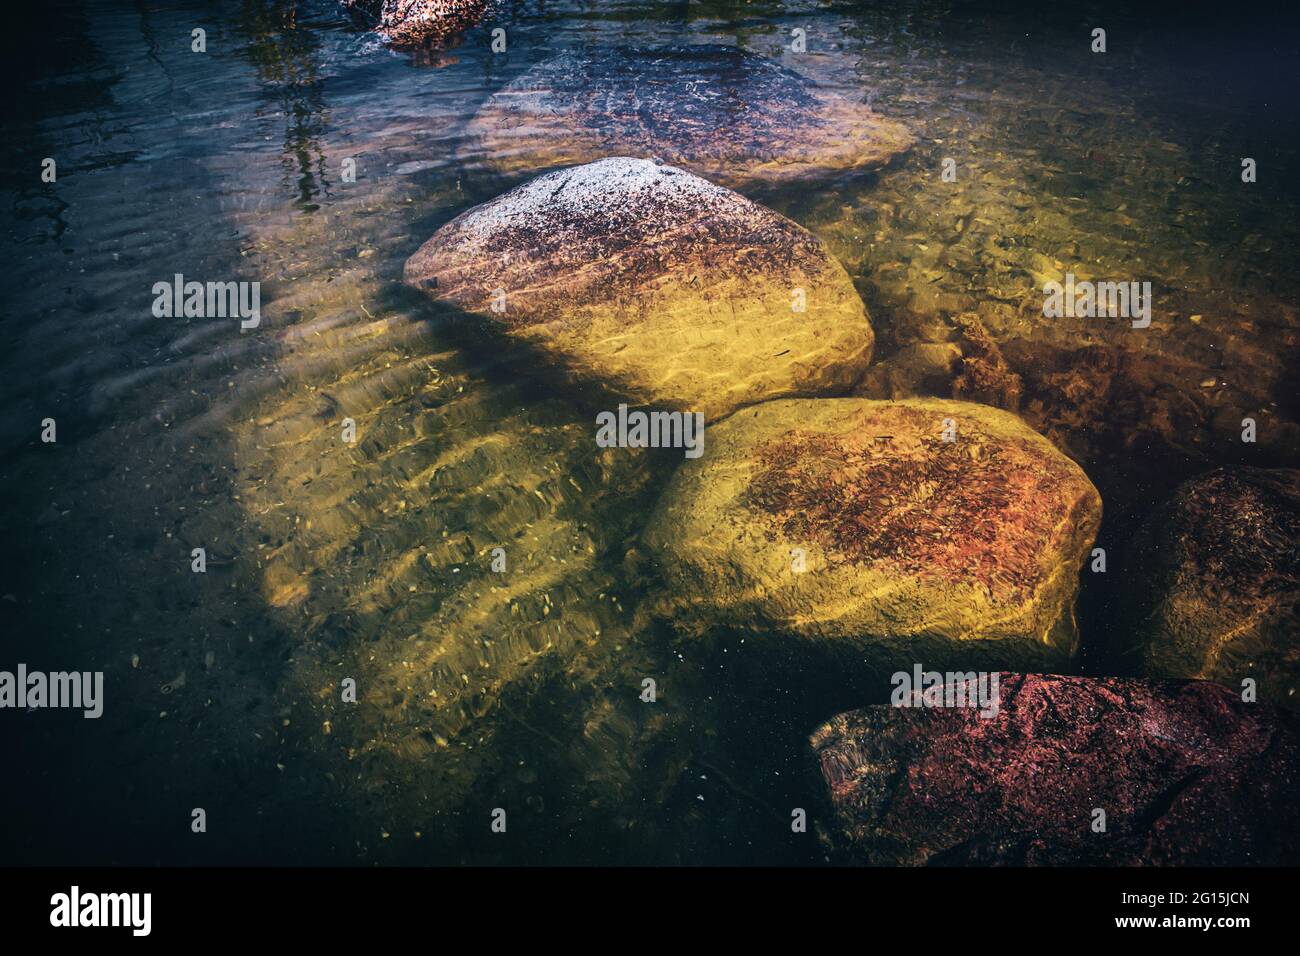 Große Felsen Steine liegen in einem klaren, durchsichtigen See unter Wasser. Grüner Stein im See unter Wasser die mit Moos bewachsen sind. Stock Photo